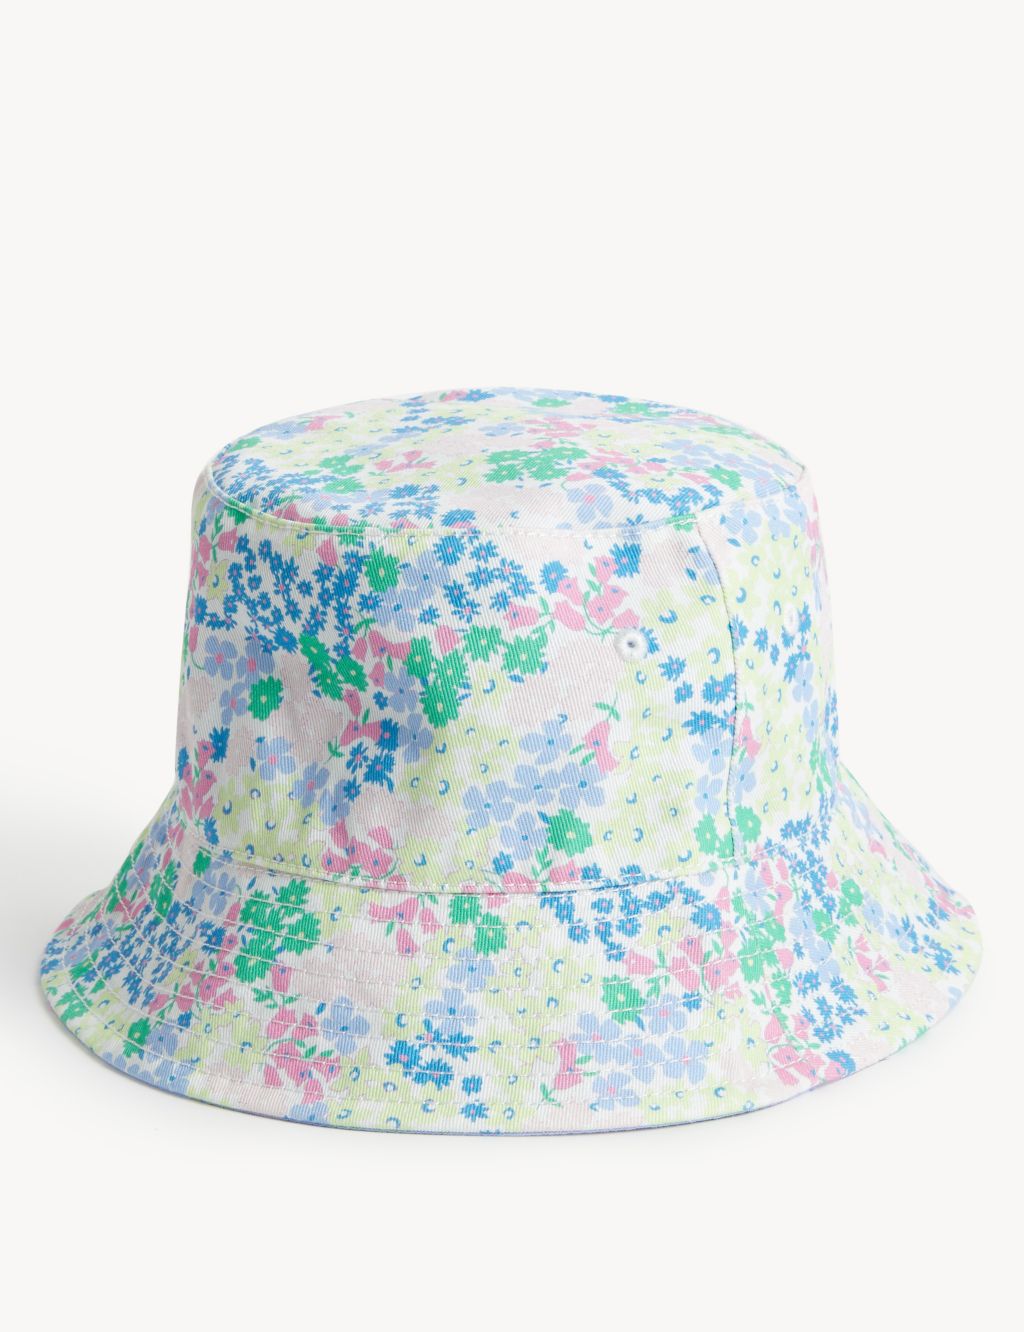 Kids' Pure Cotton Floral Sun Hat (1-13 Yrs) image 2